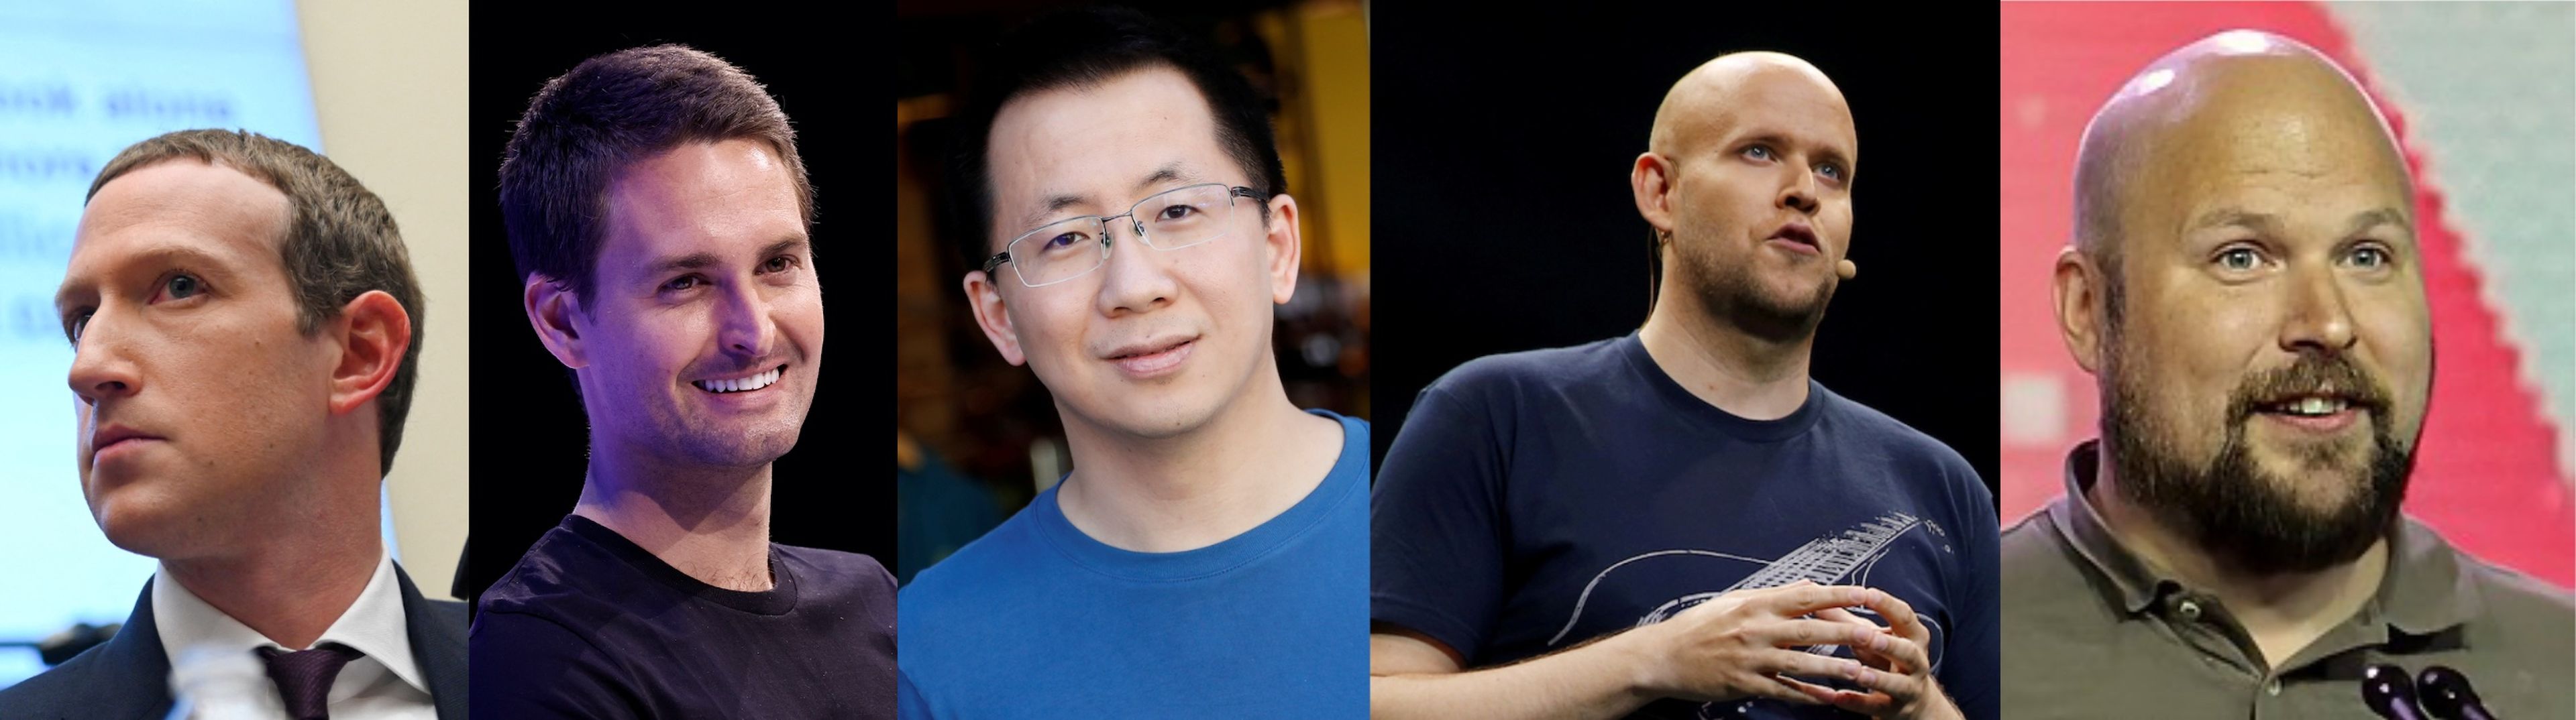 Mark Zuckerberg, fundador y CEO de Facebook; Evan Spiegel, fundador y CEO de Snapchat; Zhang Yiming, fundador y CEO de TikTok; Daniel Ek, fundador y CEO de Spotify; y Markus Persson, fundador de Minecraft.